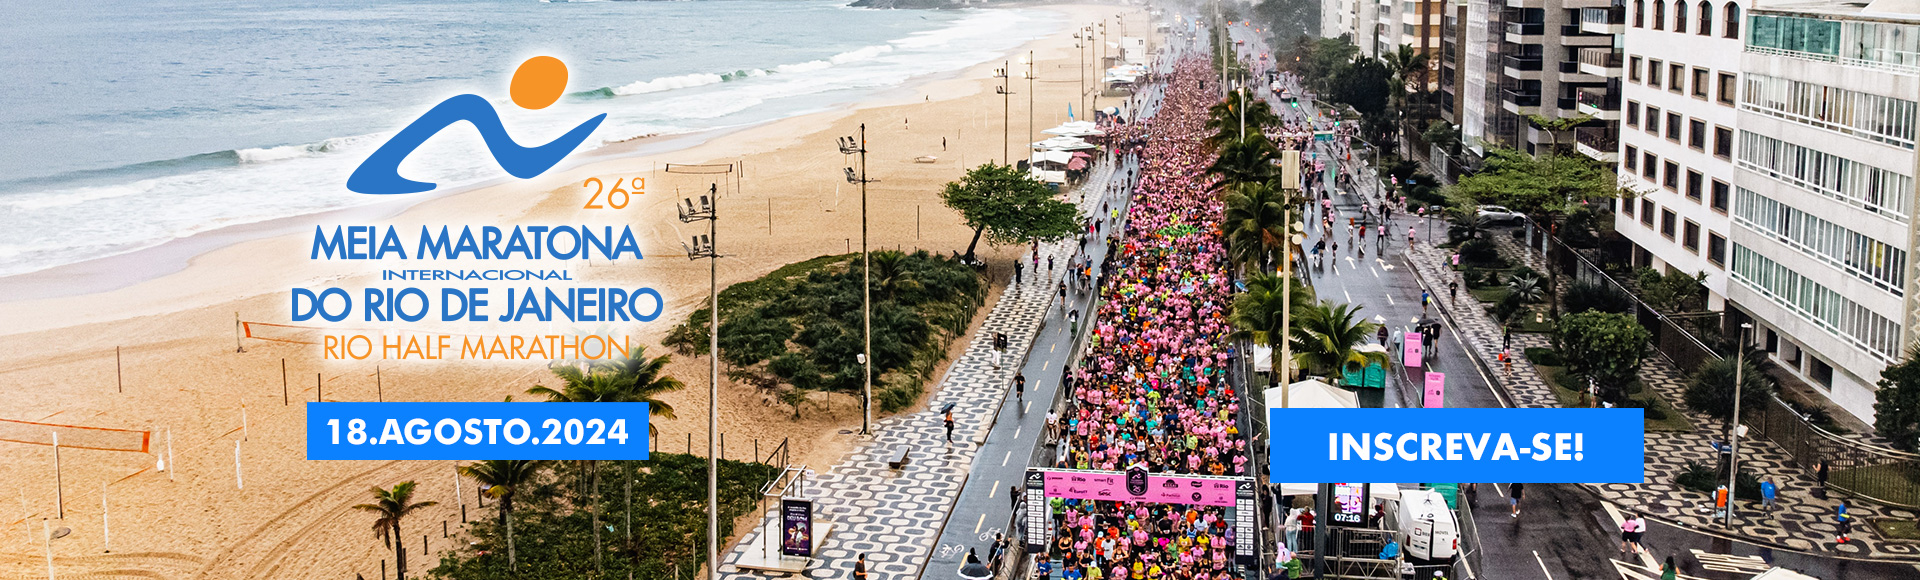 26ª Meia Maratona Internacional do Rio de Janeiro 2024